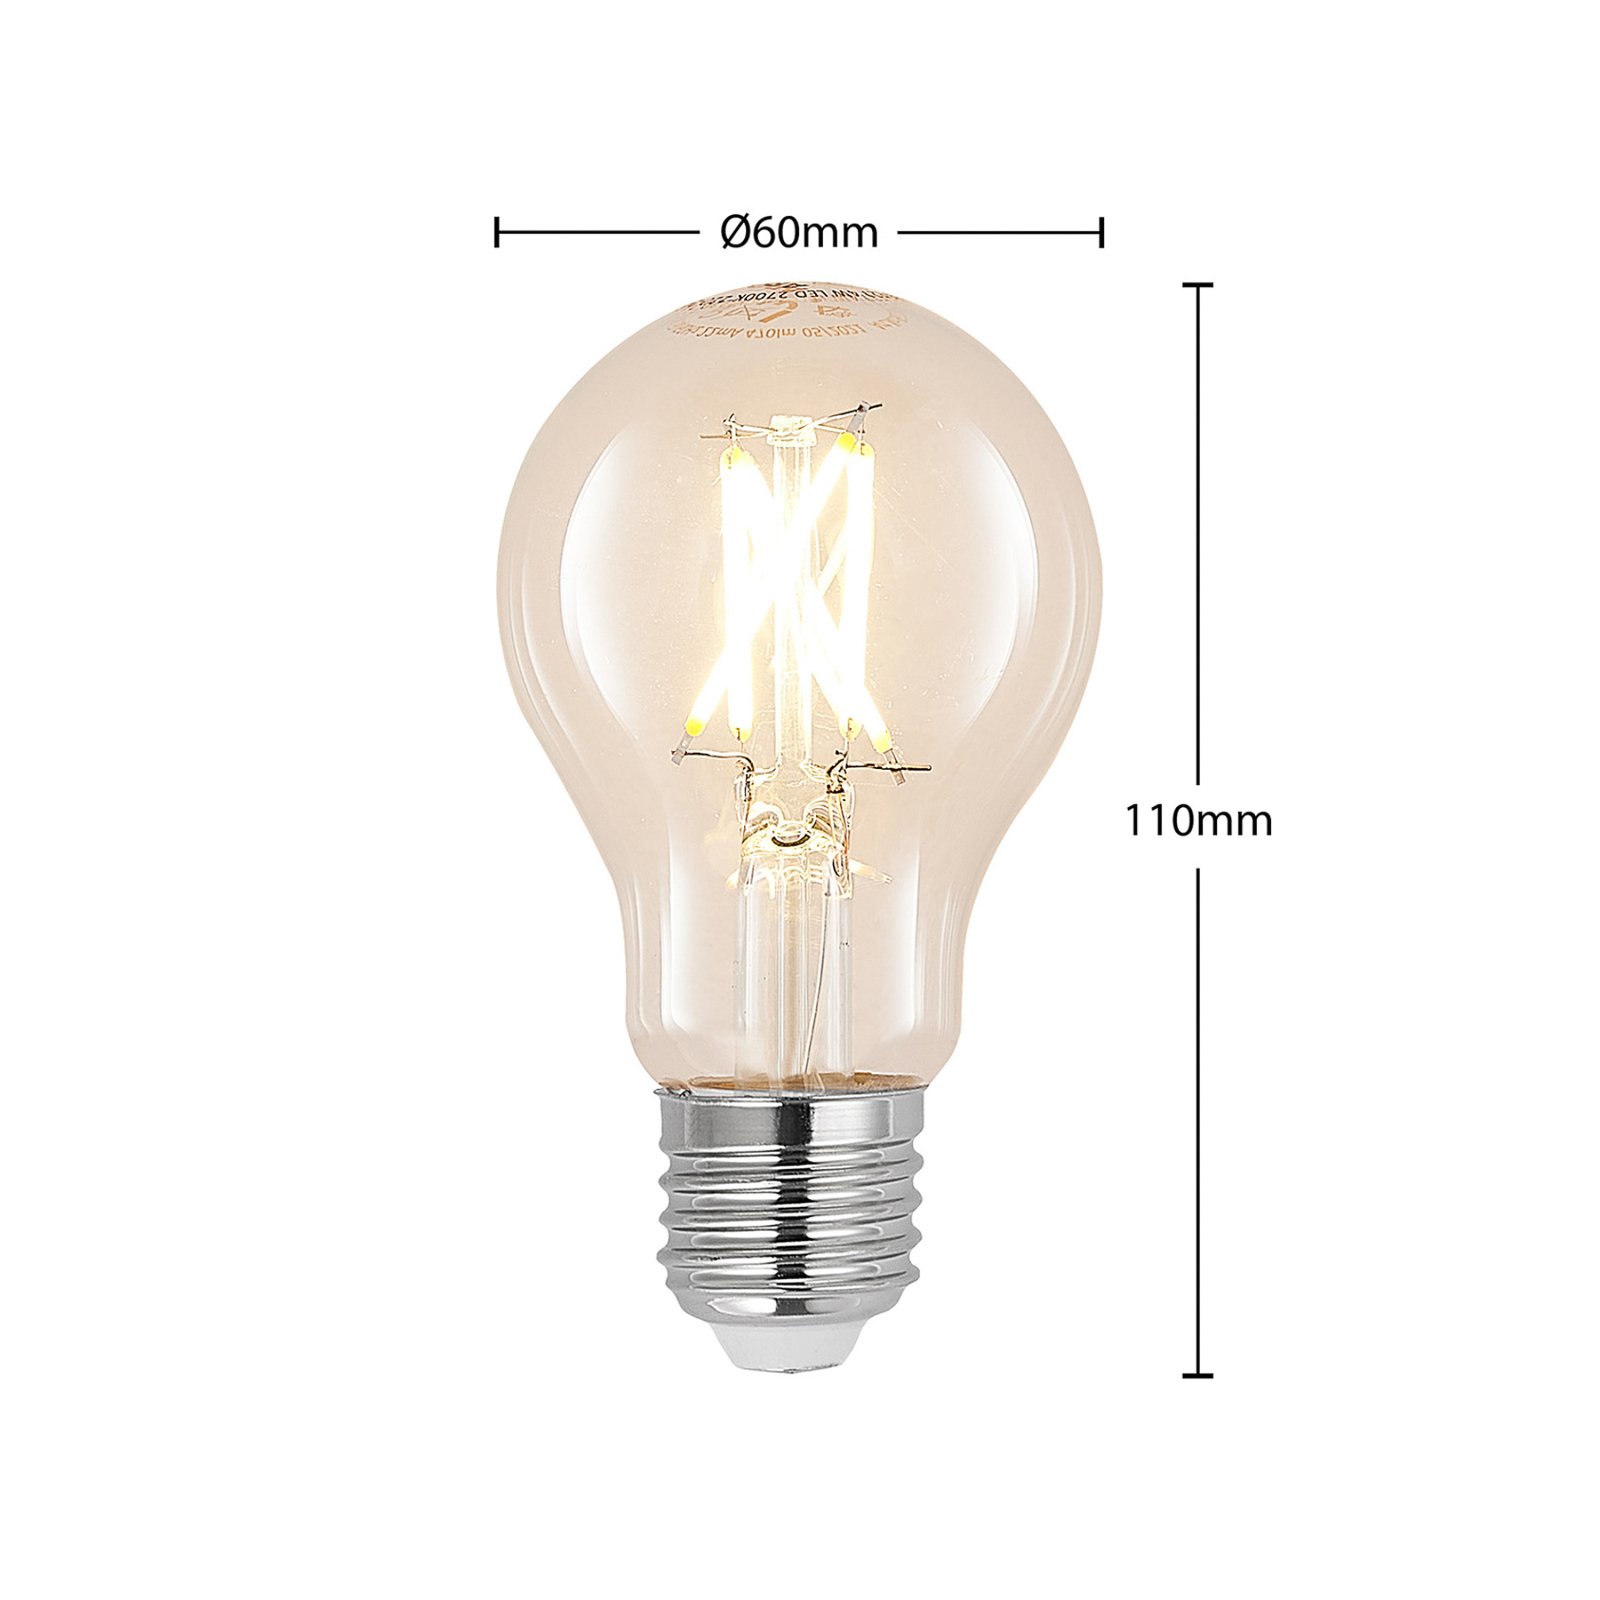 Lampada LED E27 4W 2,700K Filamento regulável transparente 3pcs